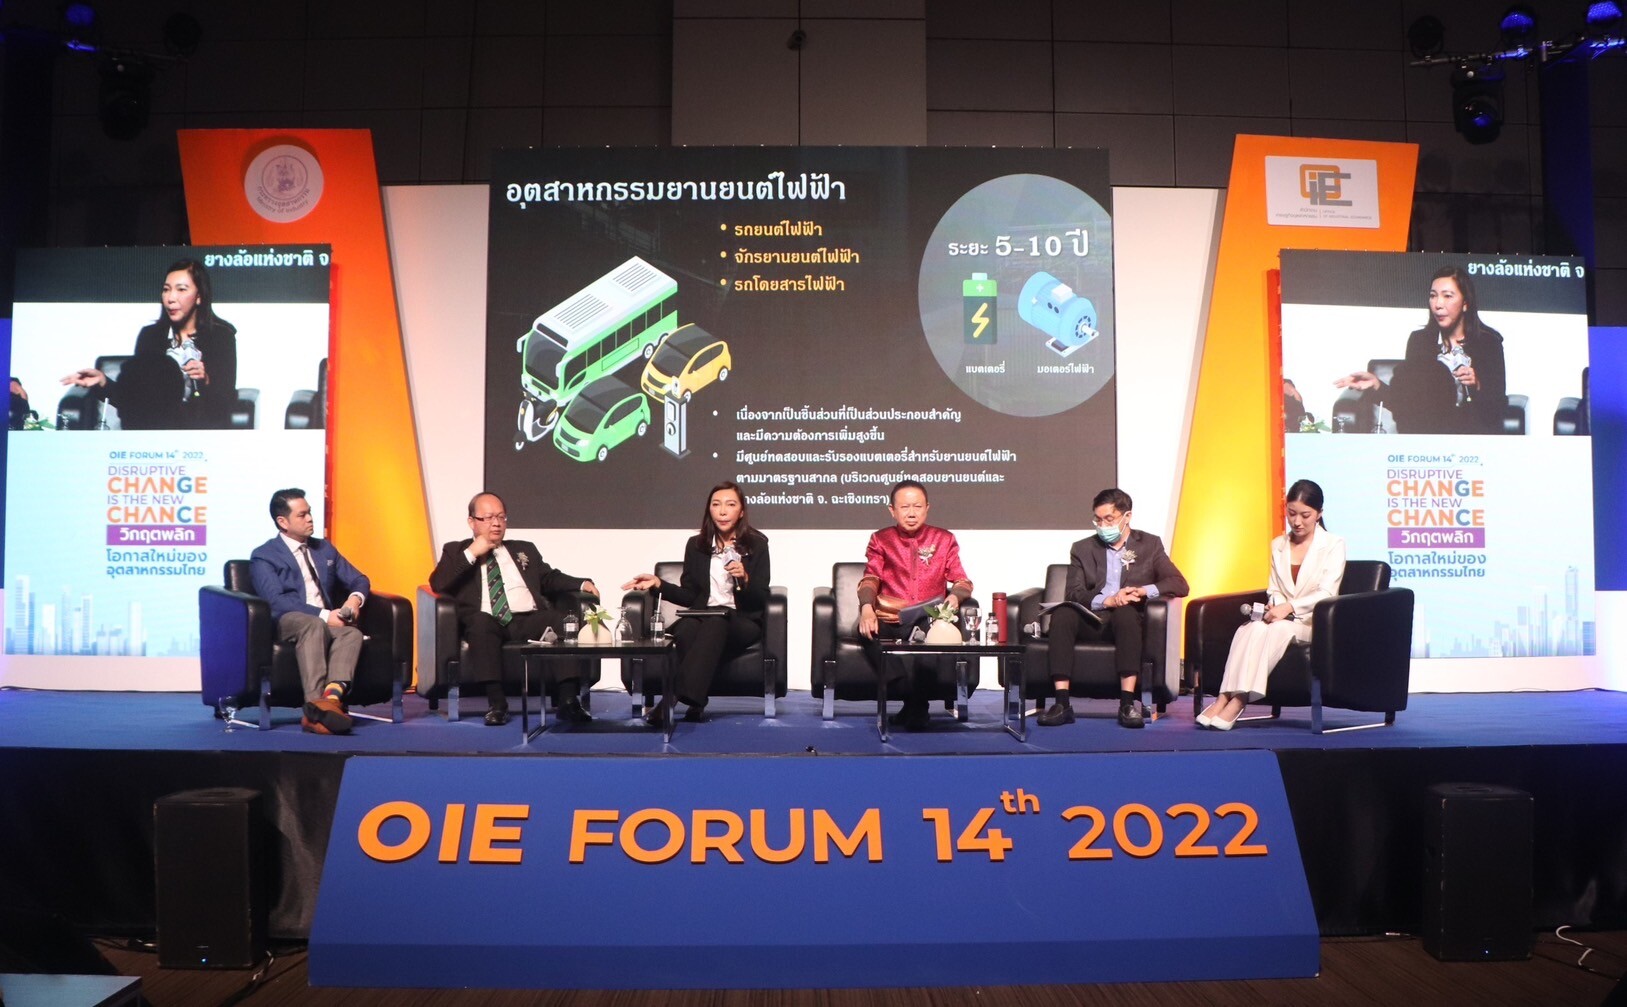 สศอ. จัดงานประจำปี OIE FORUM 2022 ชี้ช่องเสริมแกร่งศักยภาพอุตสาหกรรมไทย ยกระดับความสามารถแข่งขัน ขับเคลื่อนโครงสร้างภาคการผลิตสู่เศรษฐกิจฐานนวัตกรรม